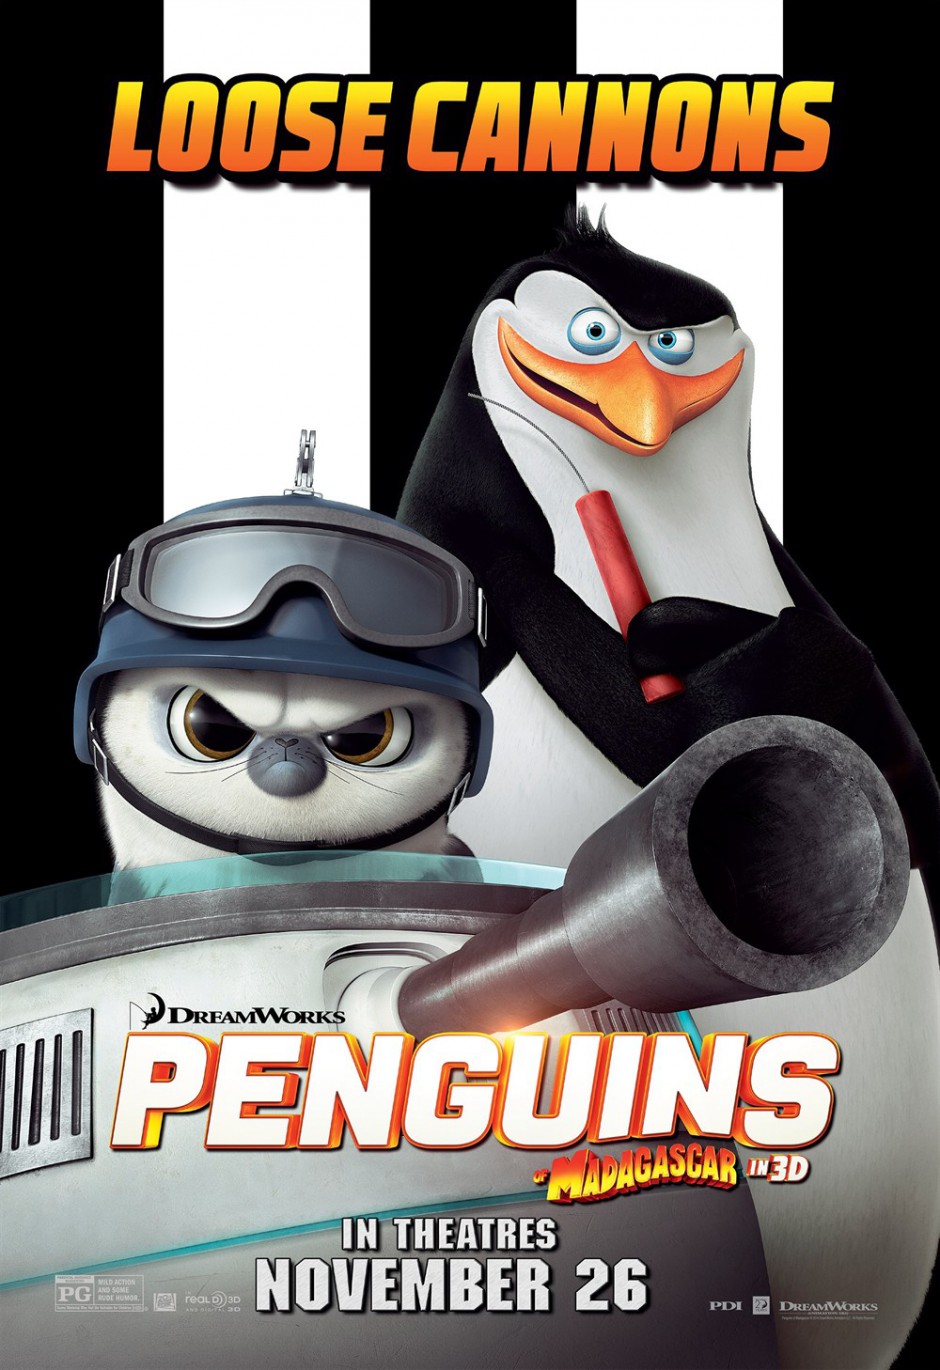 《马达加斯加的企鹅》海报